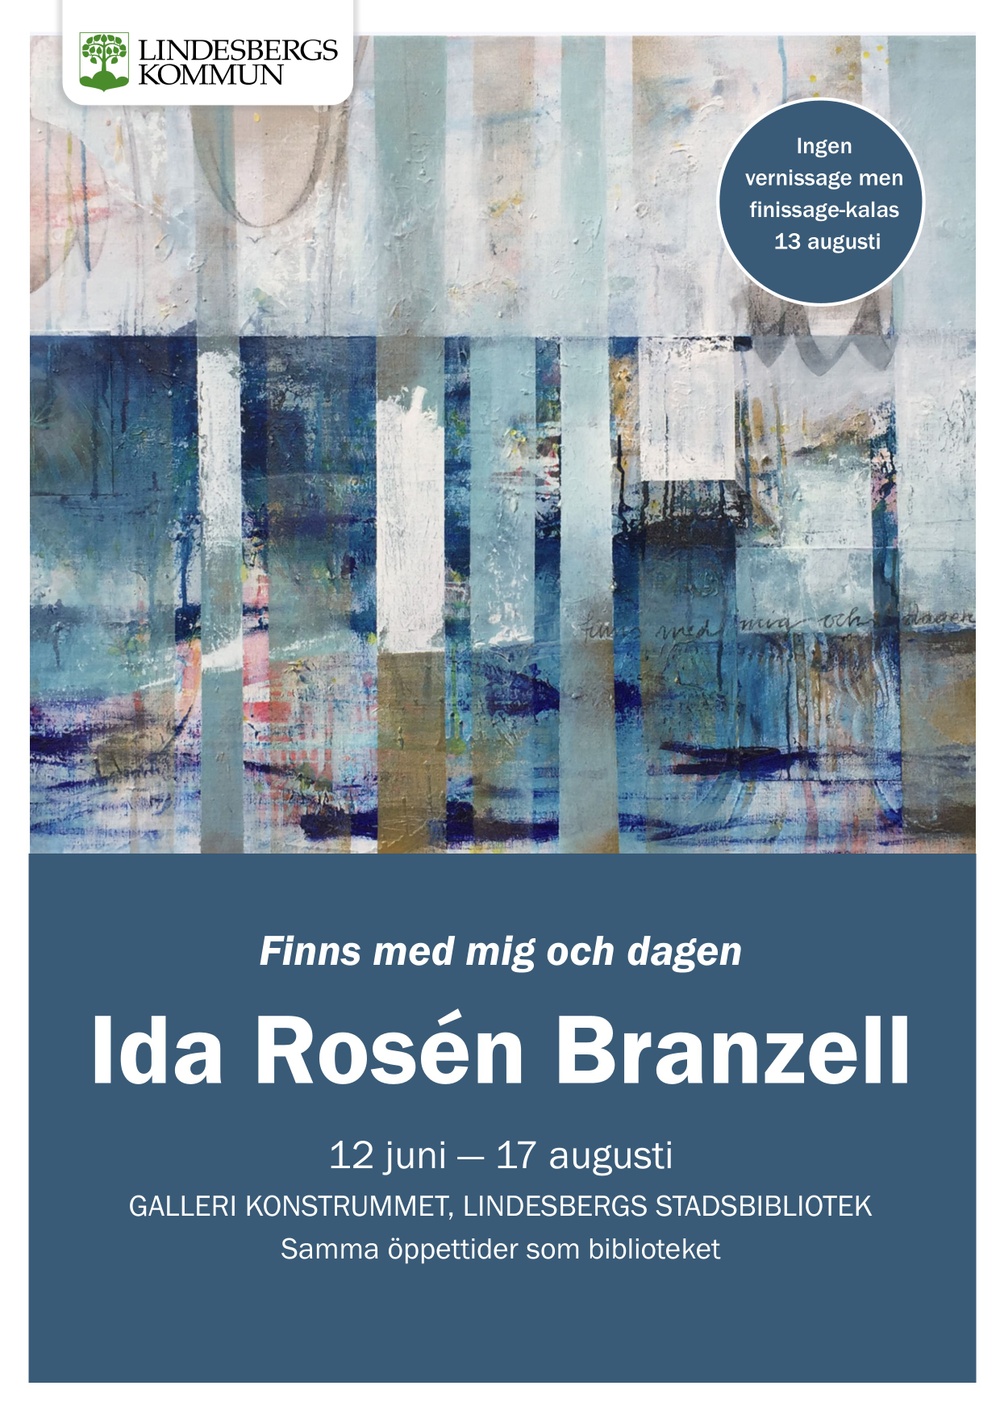 Affisch för utställningen Finns med mig och dagen. Utställningen pågår 12 juni - 17 augusti i Galleri konstrummet på Lindesbergs Stadsbibliotek.